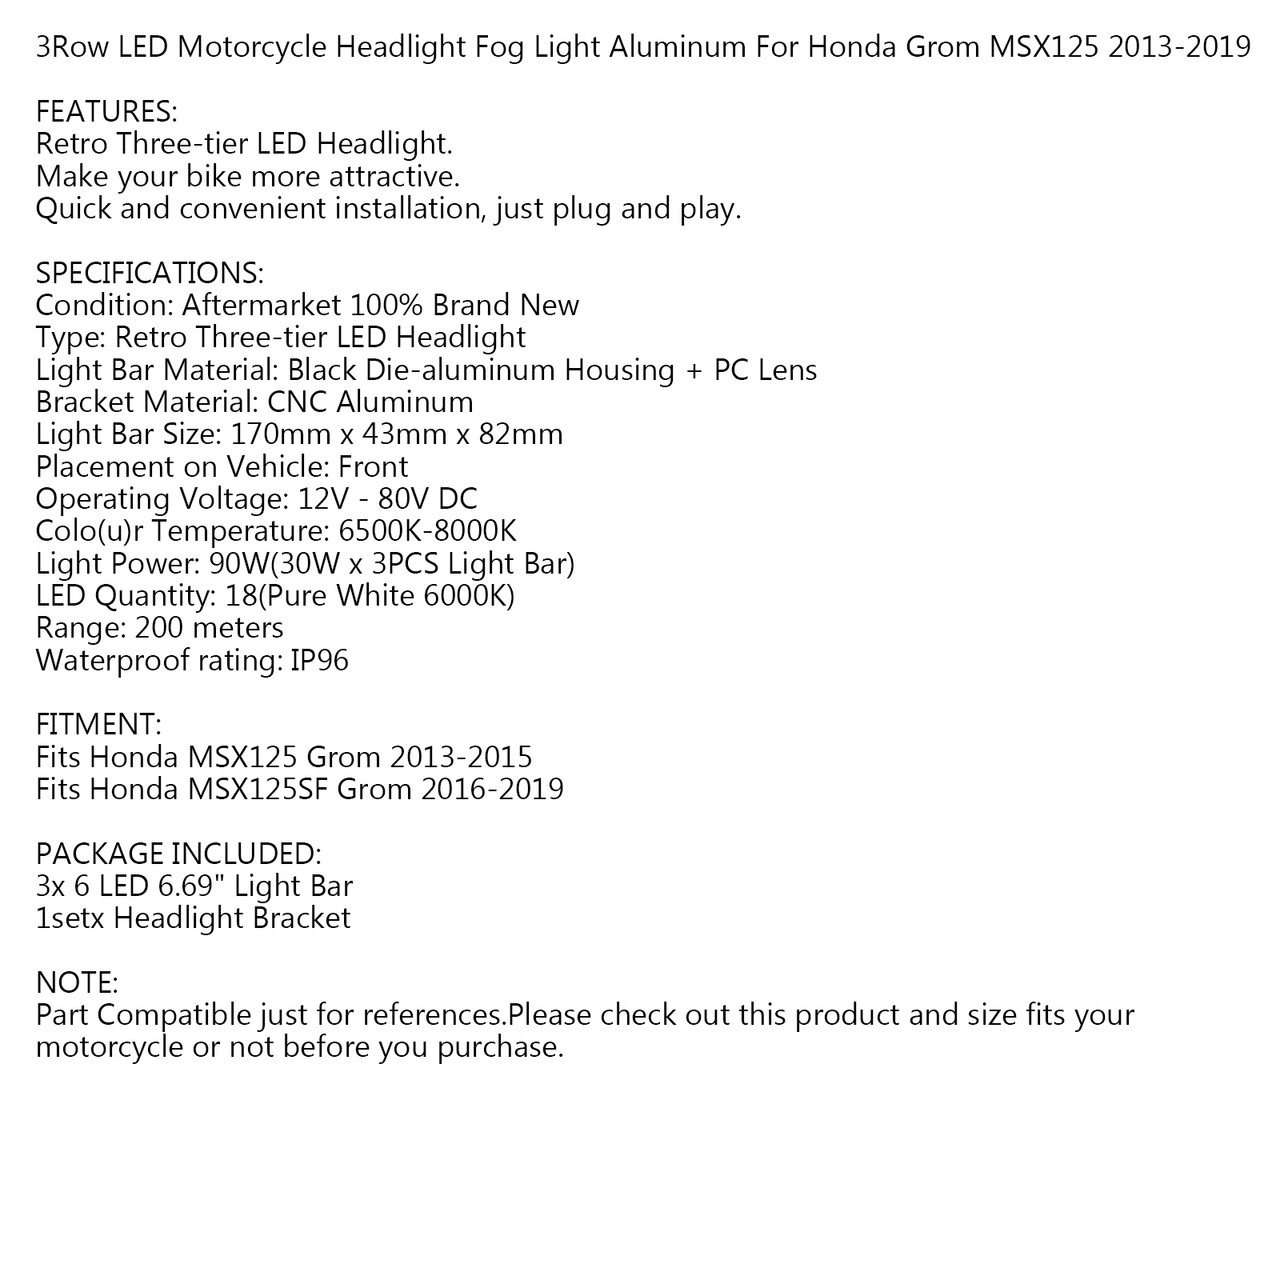 3Row LED Headlight Fog Light Aluminum for Honda MSX125 Grom 13-15 MSX125SF Grom 16-19 Black